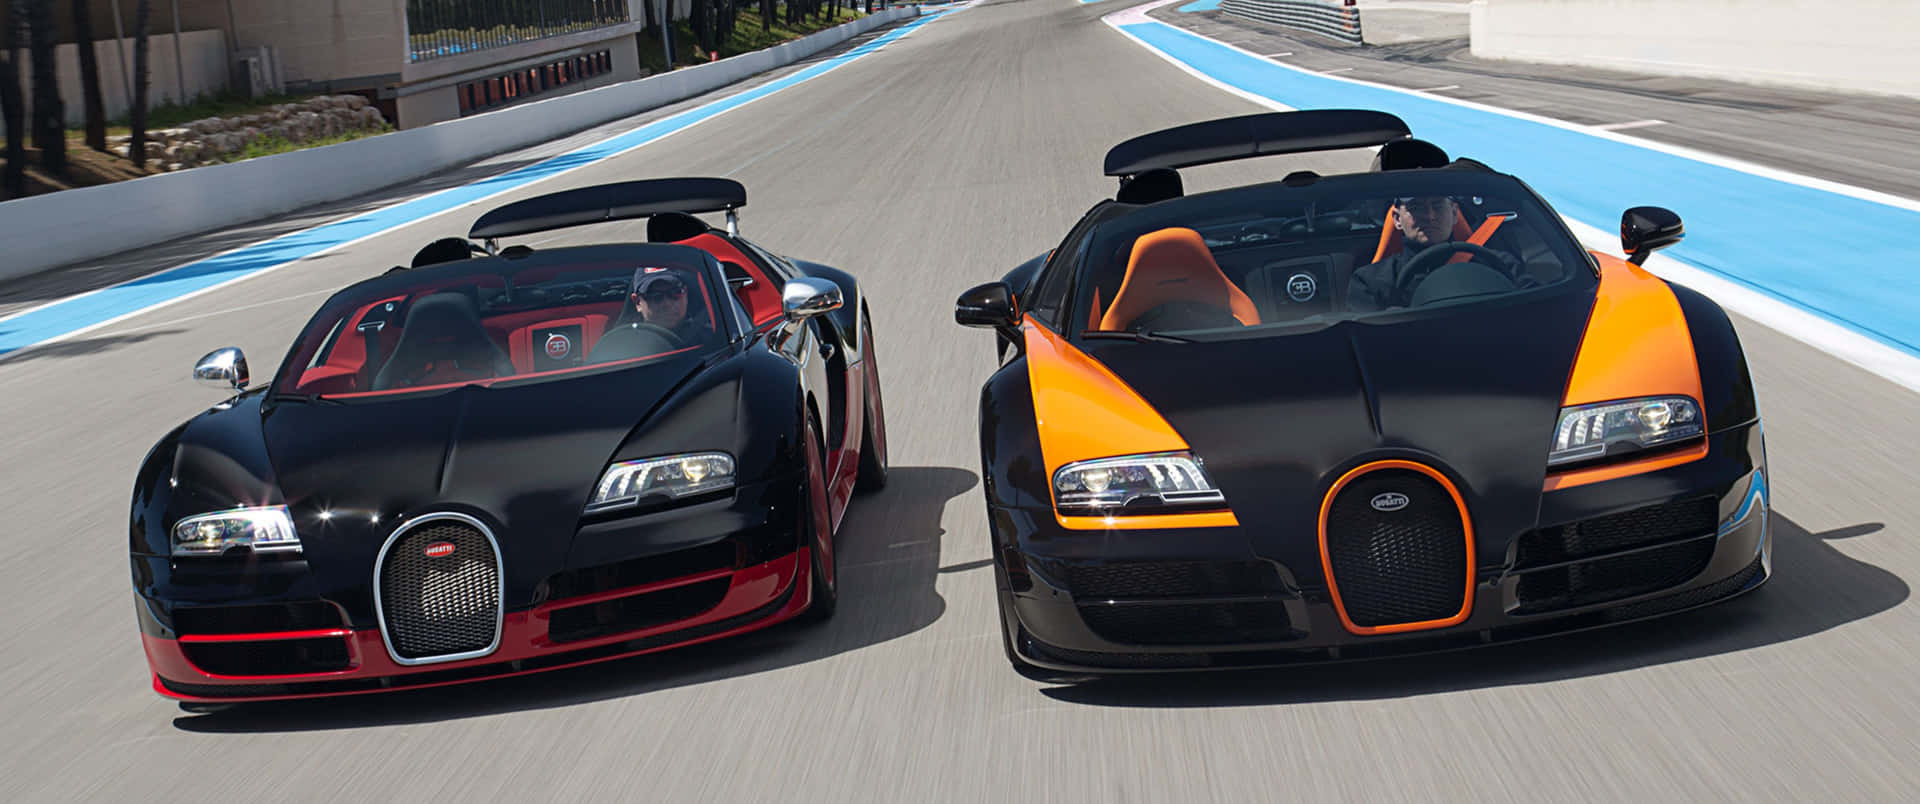 Two Bugatti Cars Are Driving Down A Track